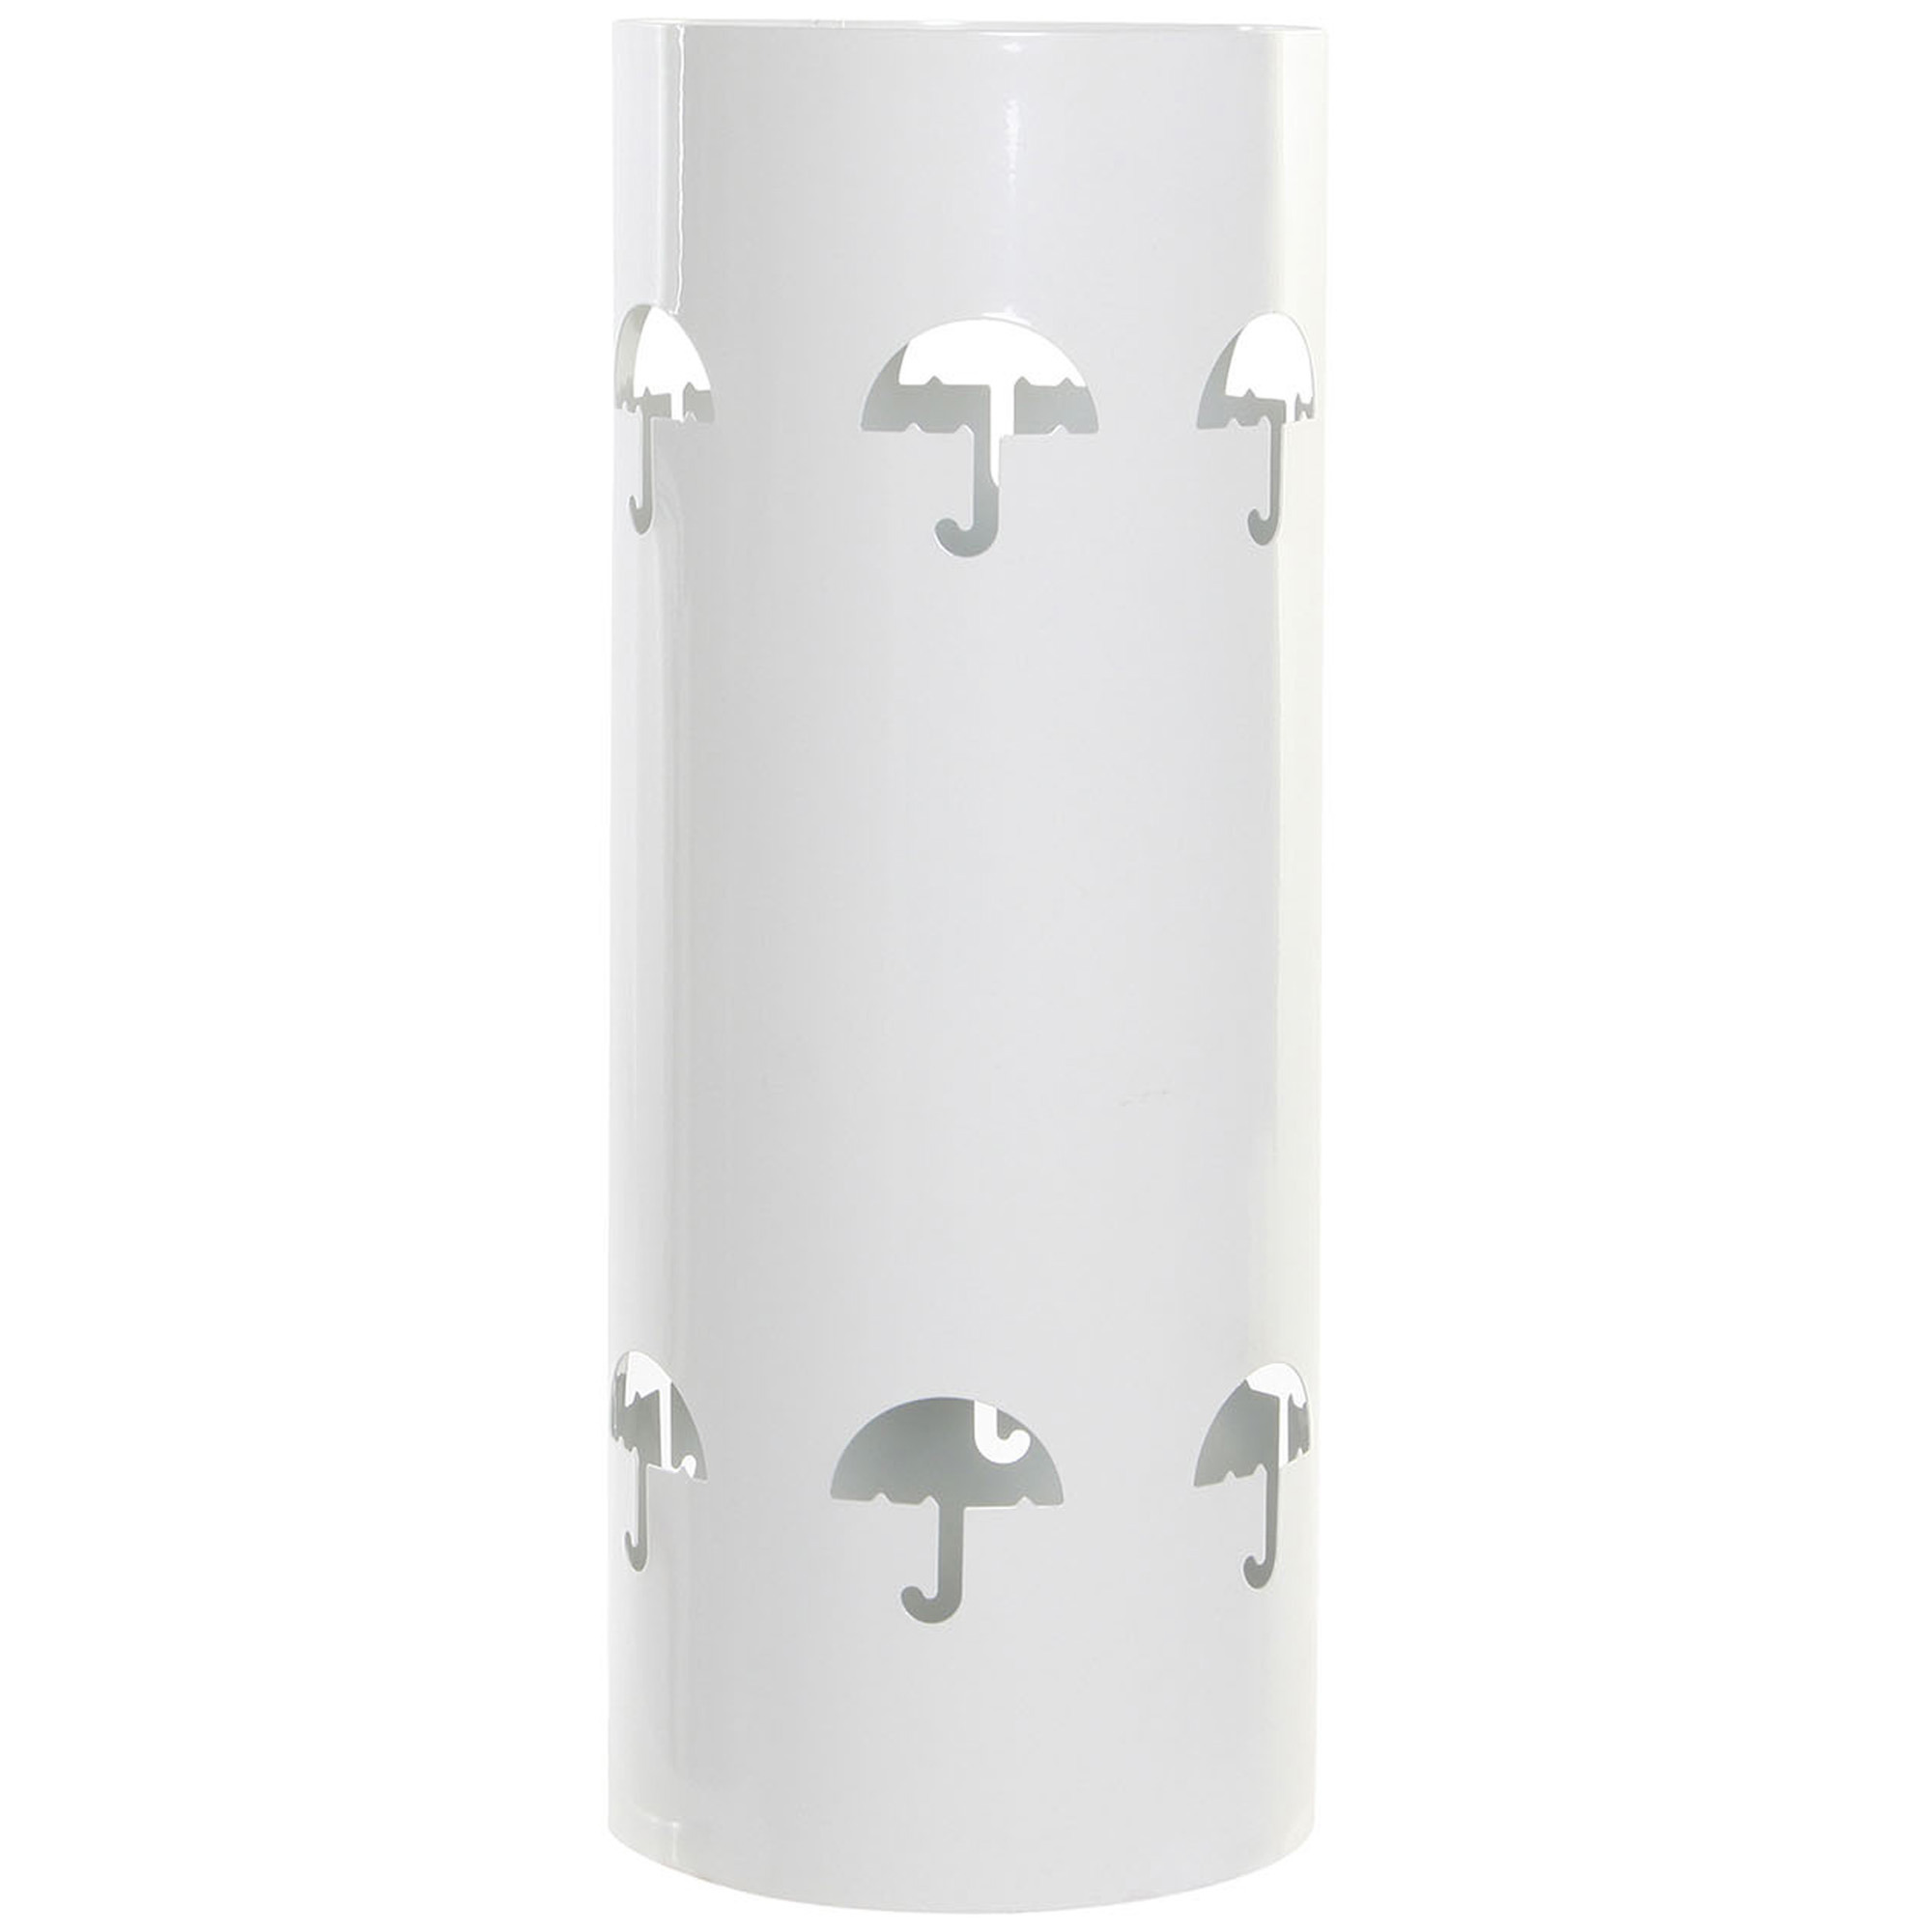 Items Paraplubak/parapluhouder - ivoor wit - metaal met decoraties - D20 x H47 cm -